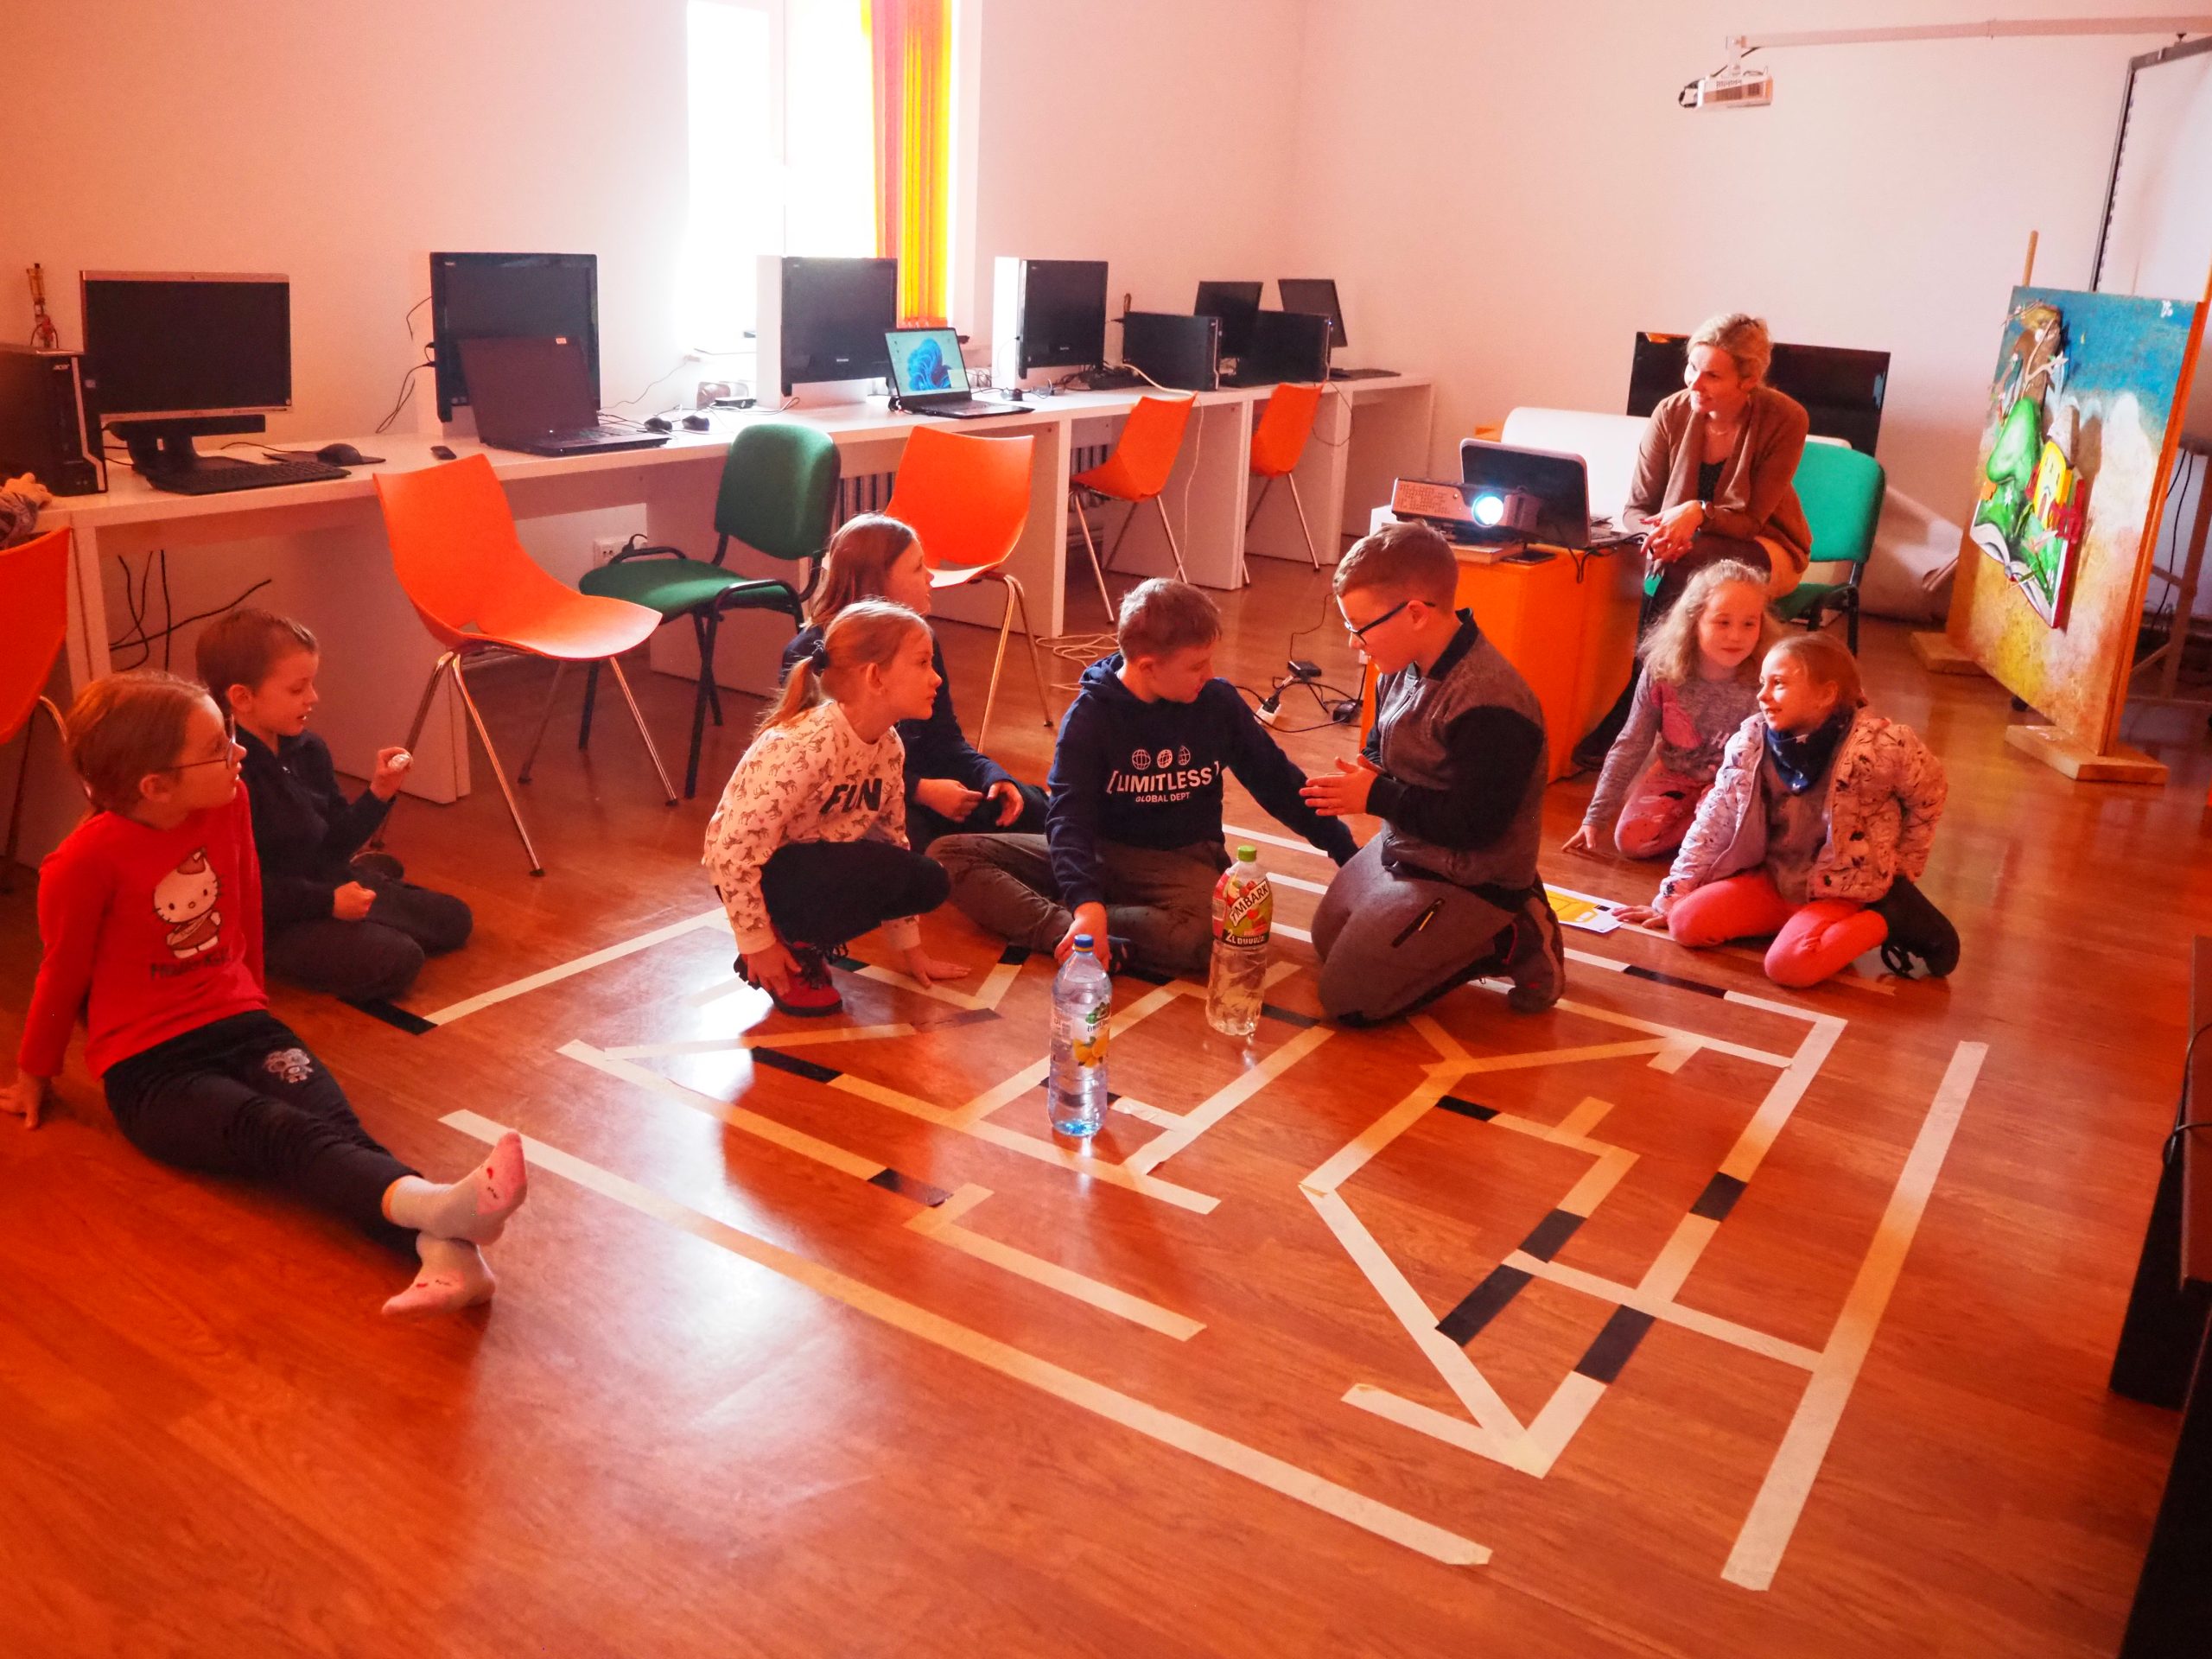 Dzieci siedzące na podłodze podczas zabaw warsztatowych.